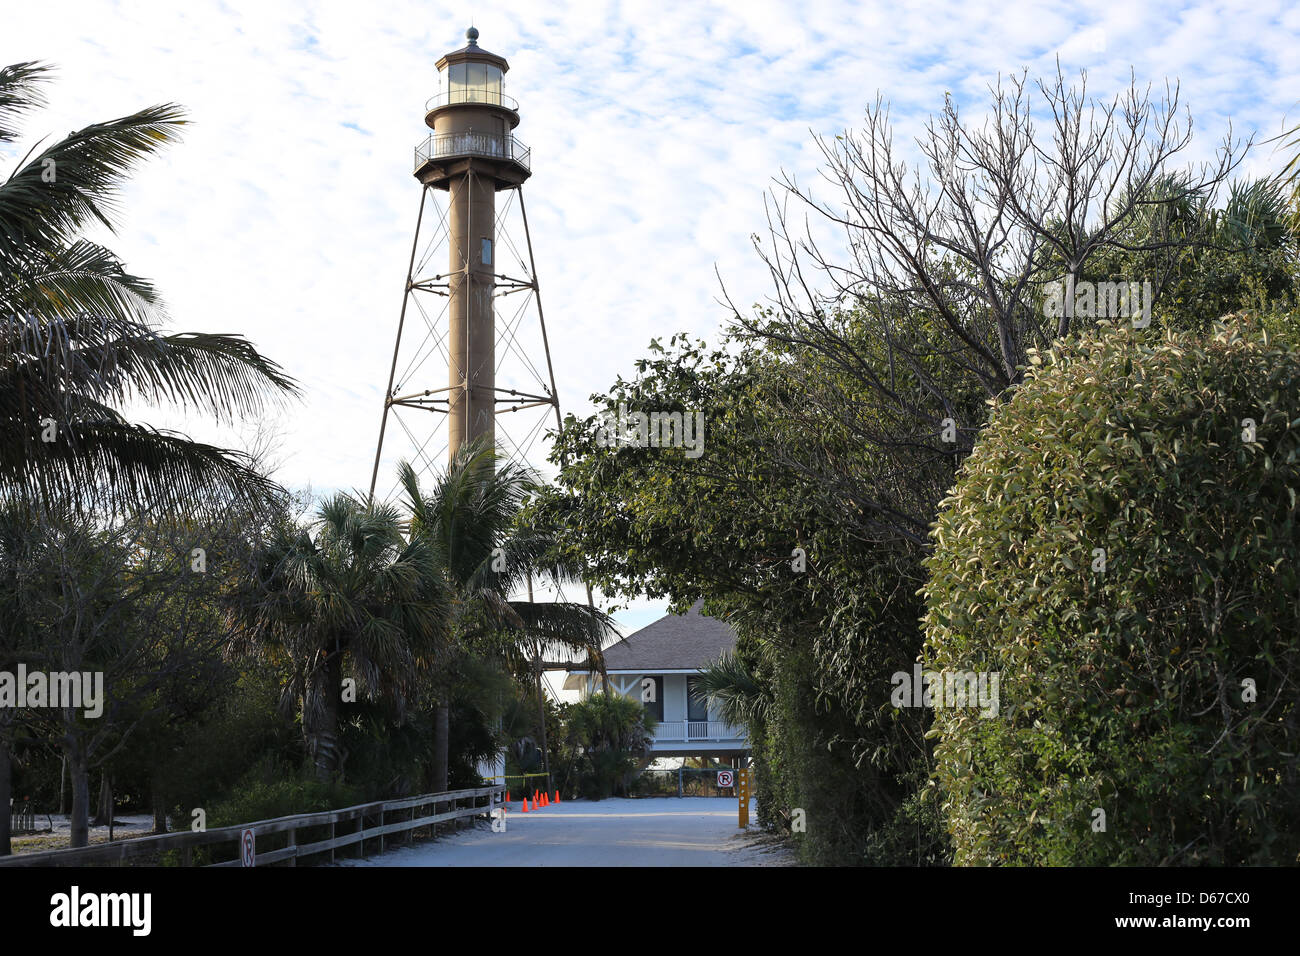 Le Sanibel Island Light ou Point Ybel Light est le premier phare sur la côte du golfe de la Floride au nord de Key West Banque D'Images